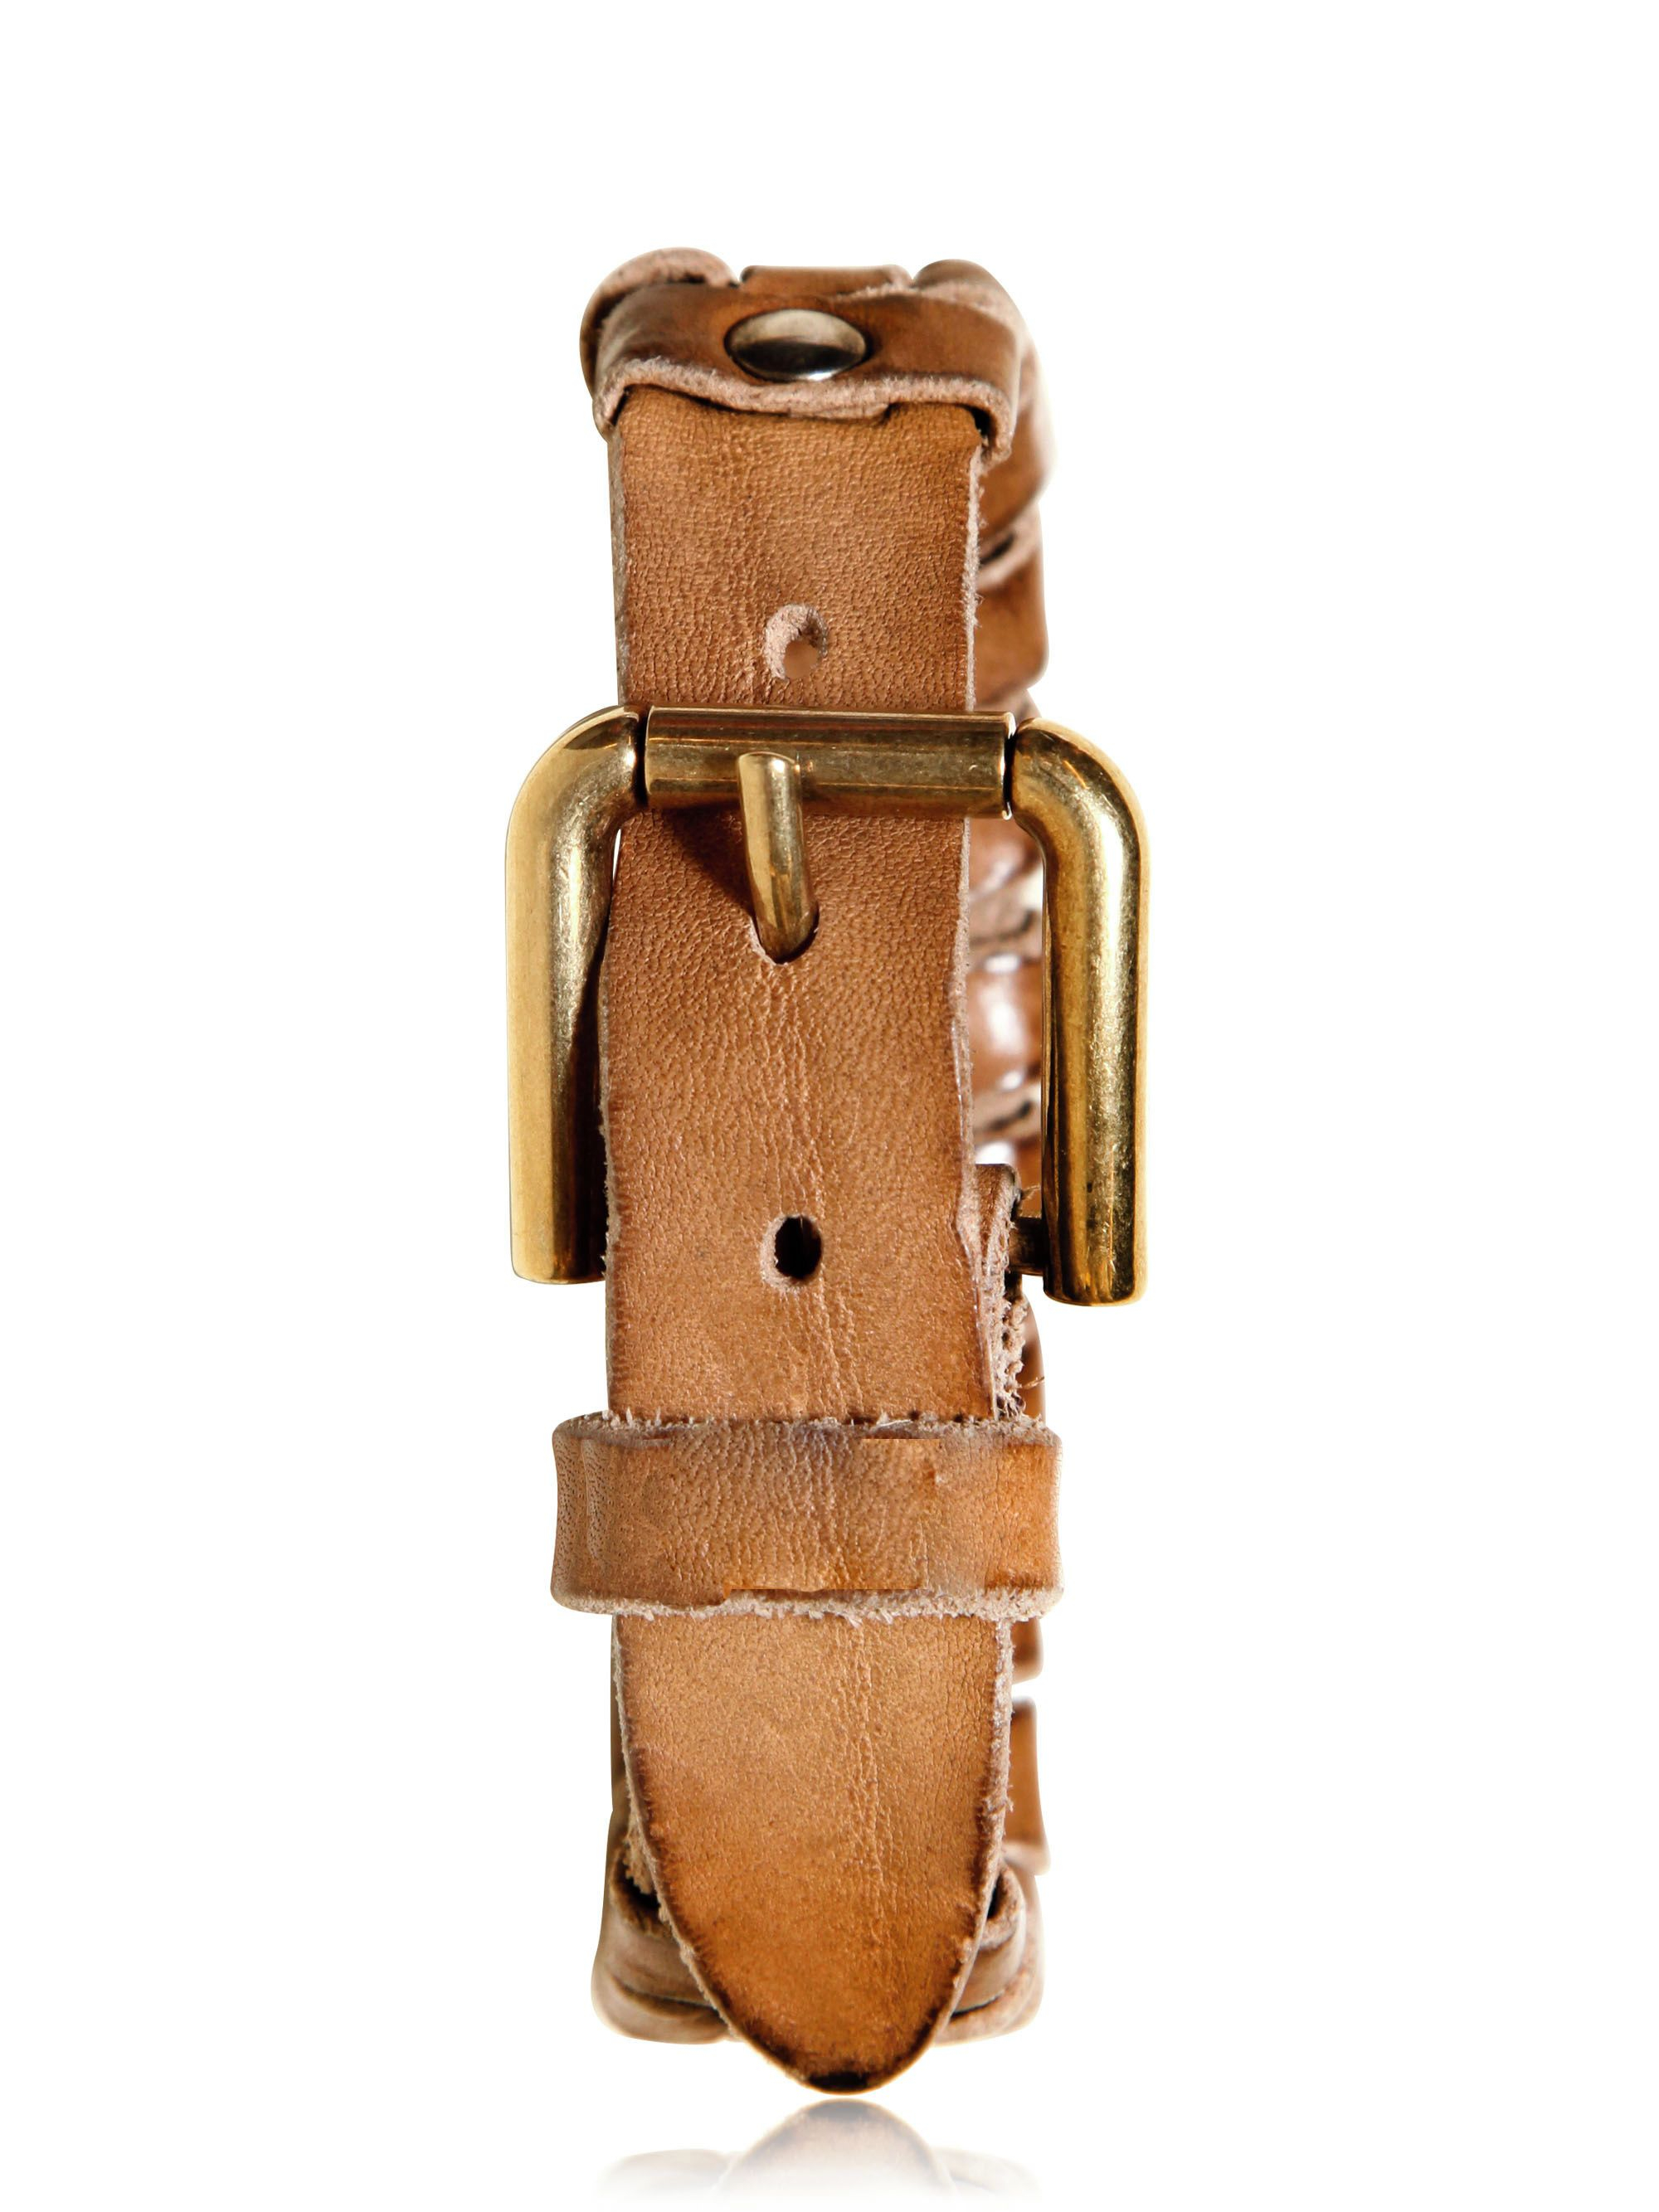 Lyst - Dolce & Gabbana Vintaged Studded Leather Bracelet in Brown for Men